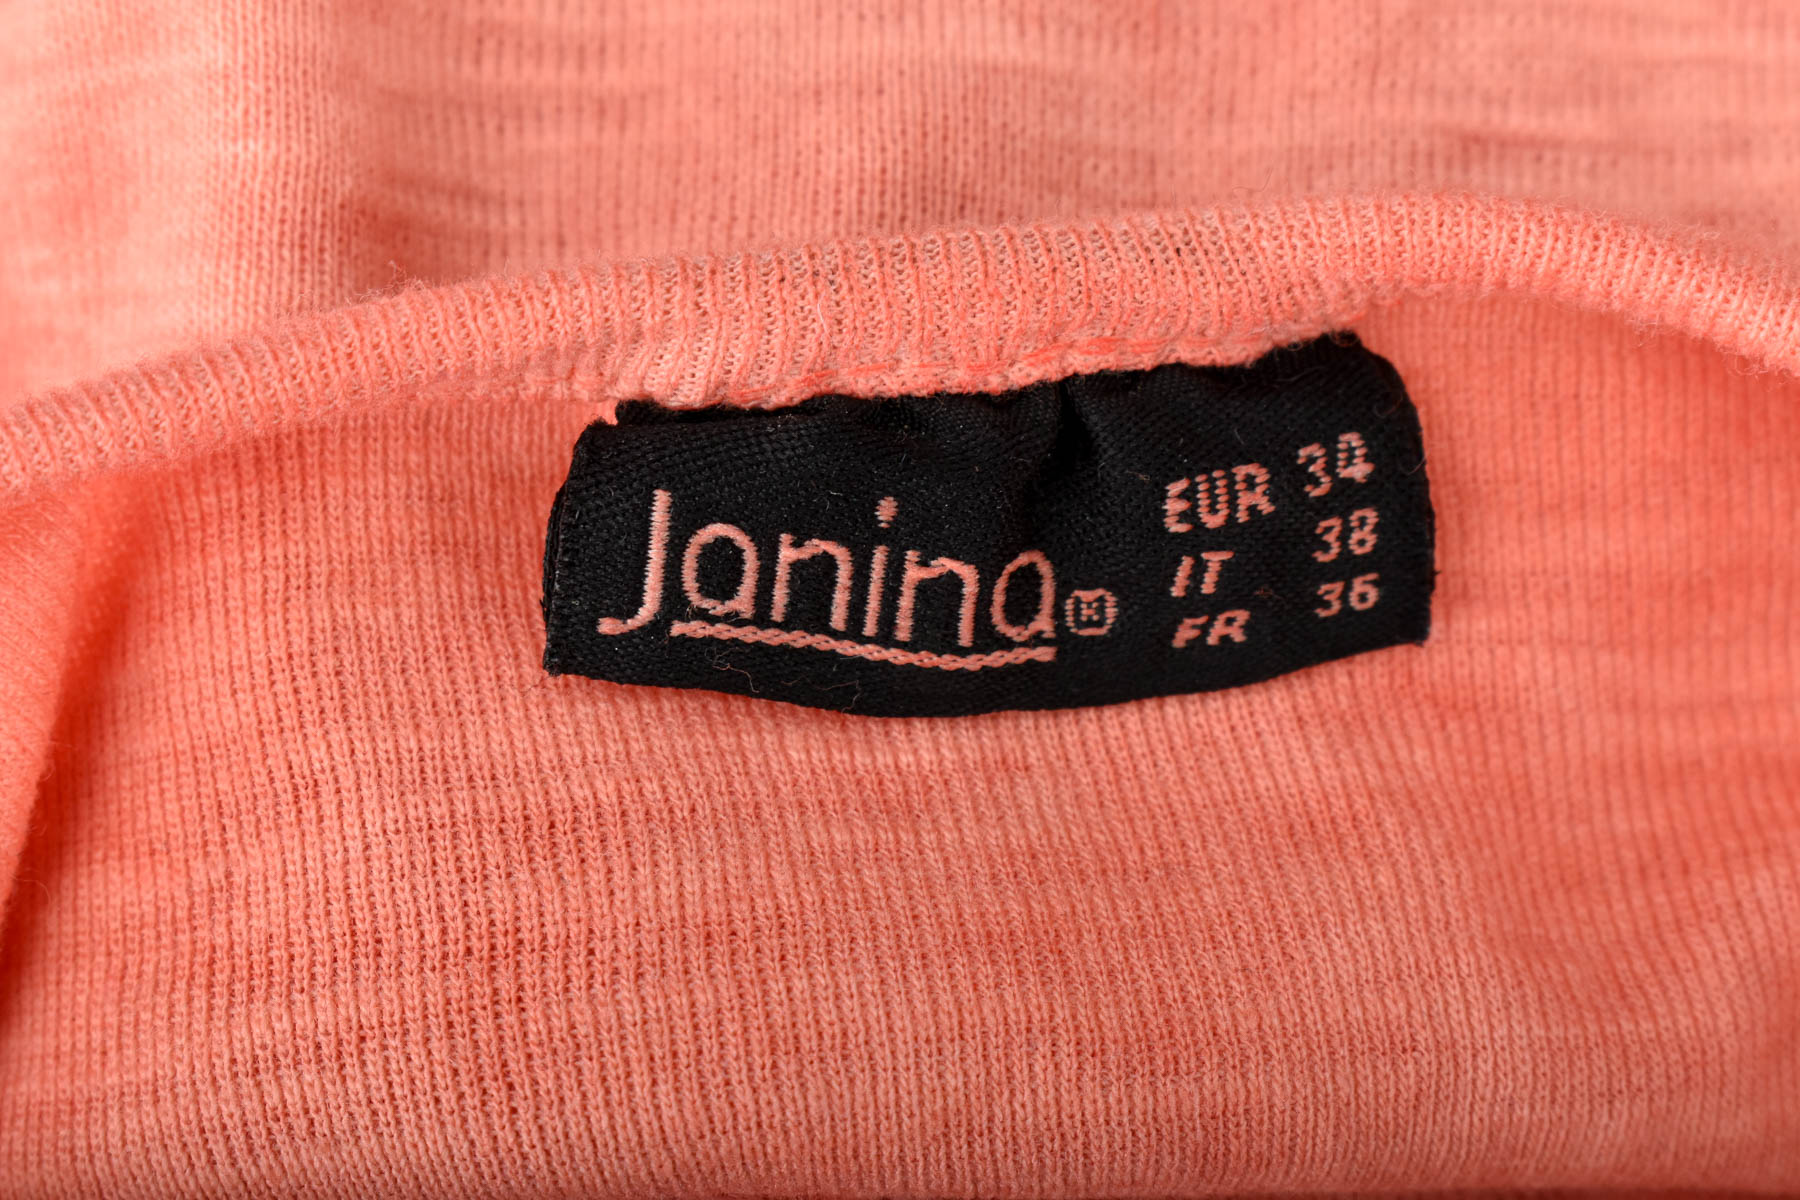 Γυναικεία μπλούζα - Janina - 2